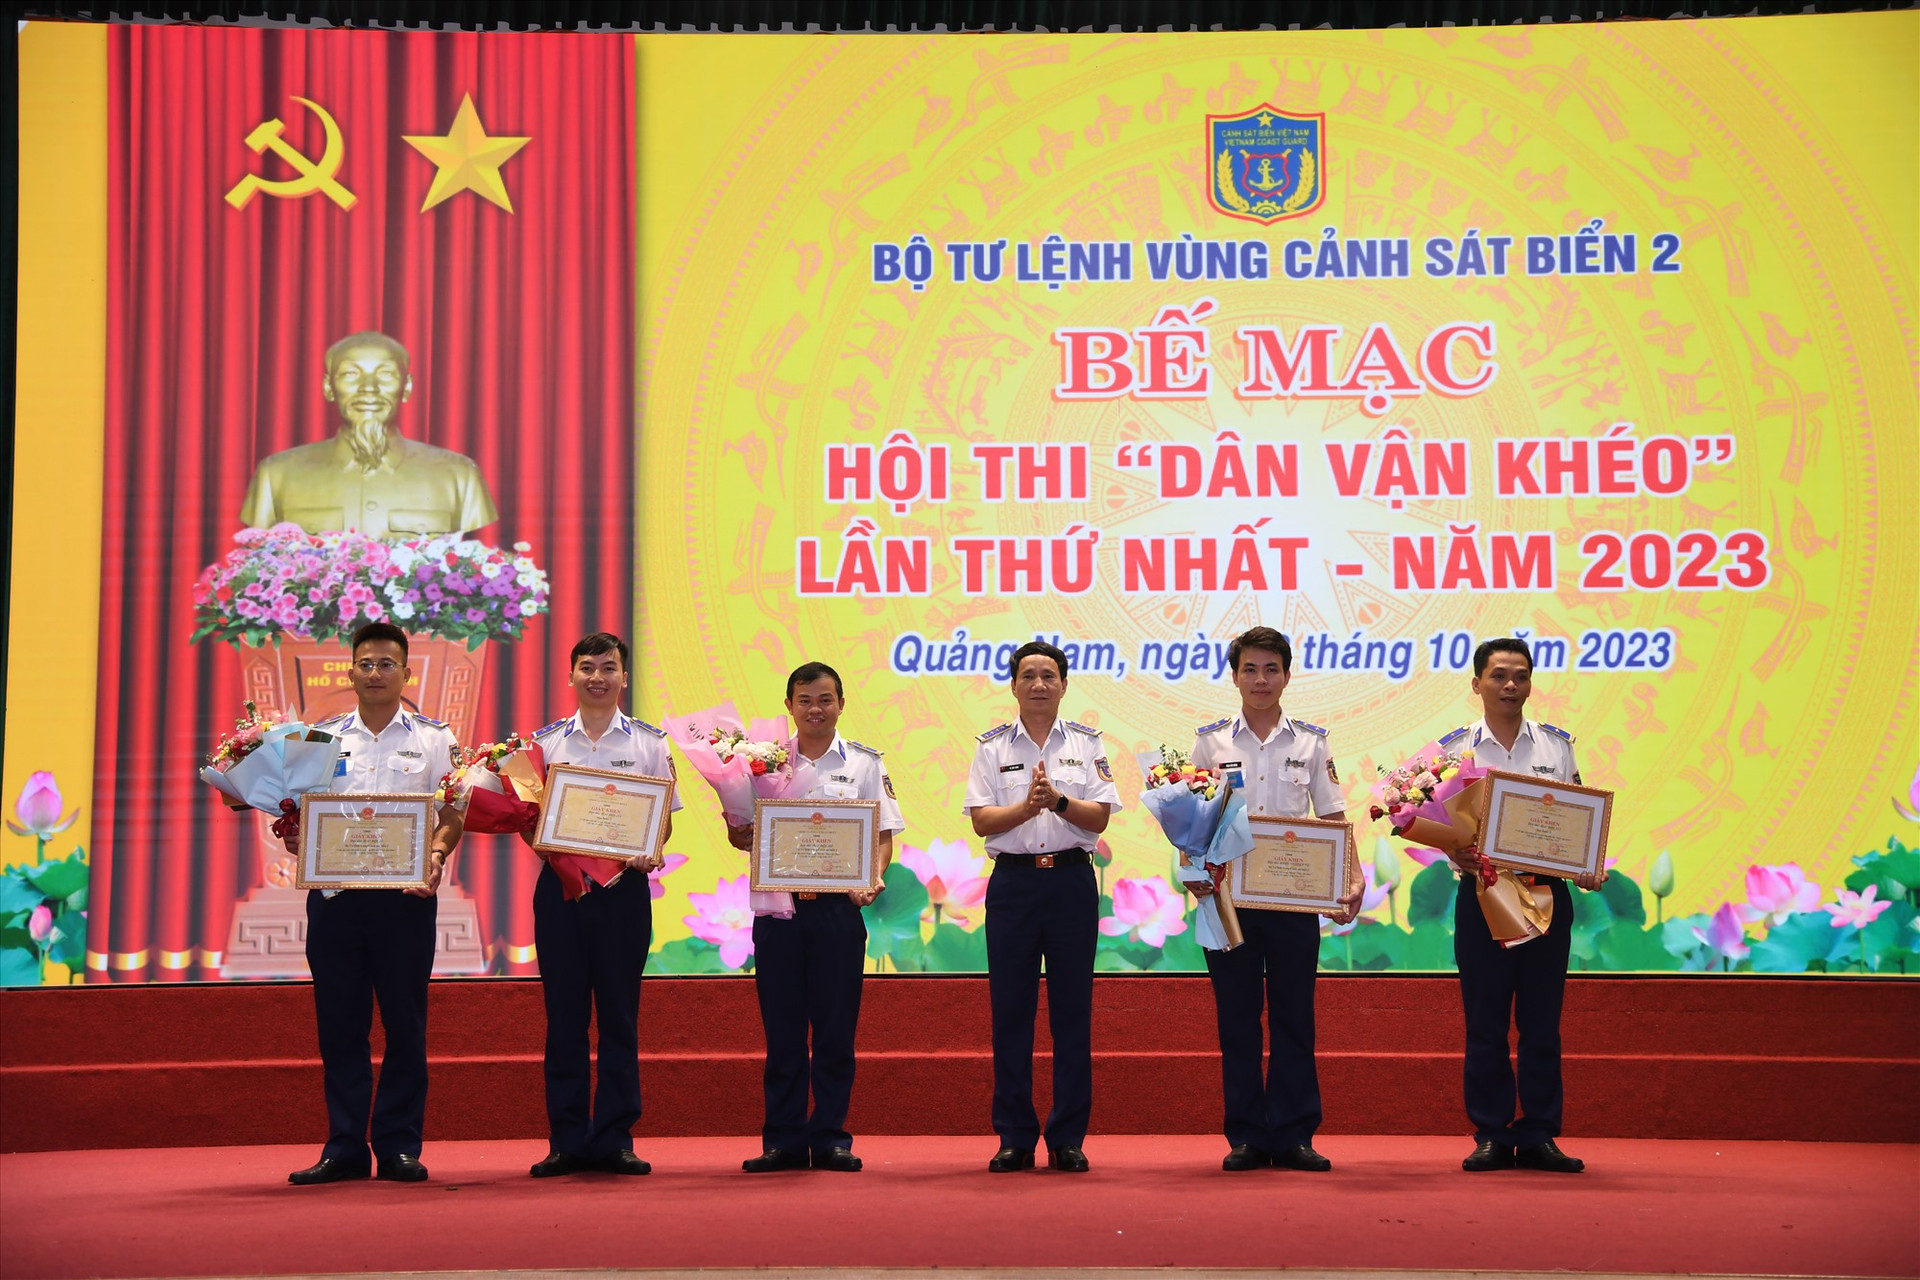 Đại tá Lê Huy Sinh - Chính ủy Bộ Tư lệnh Vùng Cảnh sát biển 2 khen thưởng cho các đội thi đạt thành tích cao.